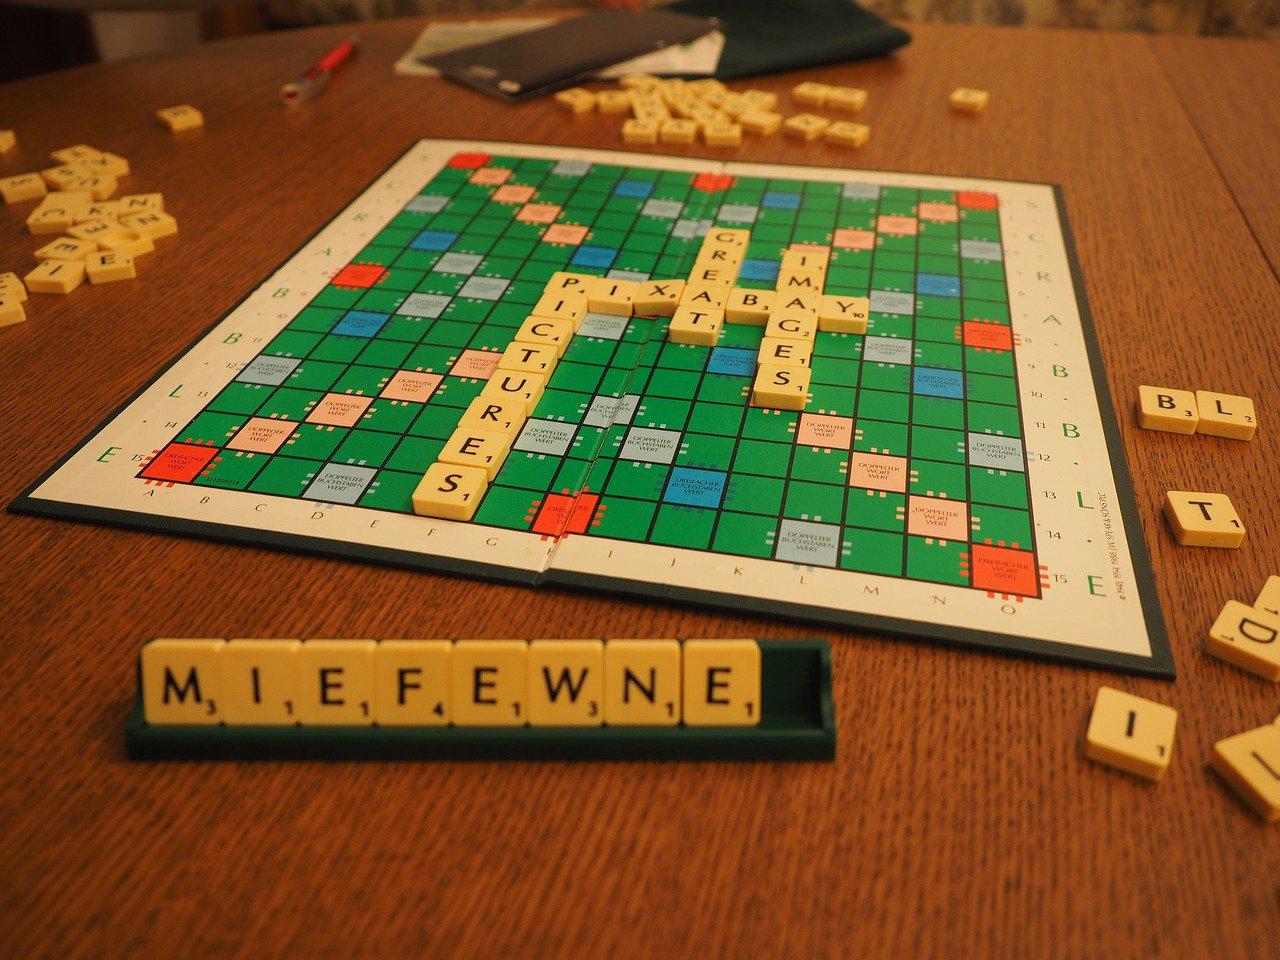 Scrabble tambiÃ©n estÃ¡ disponible como un popular juego de mesa.  (Fuente: Pixabay/Hans/ReproducciÃ³n)